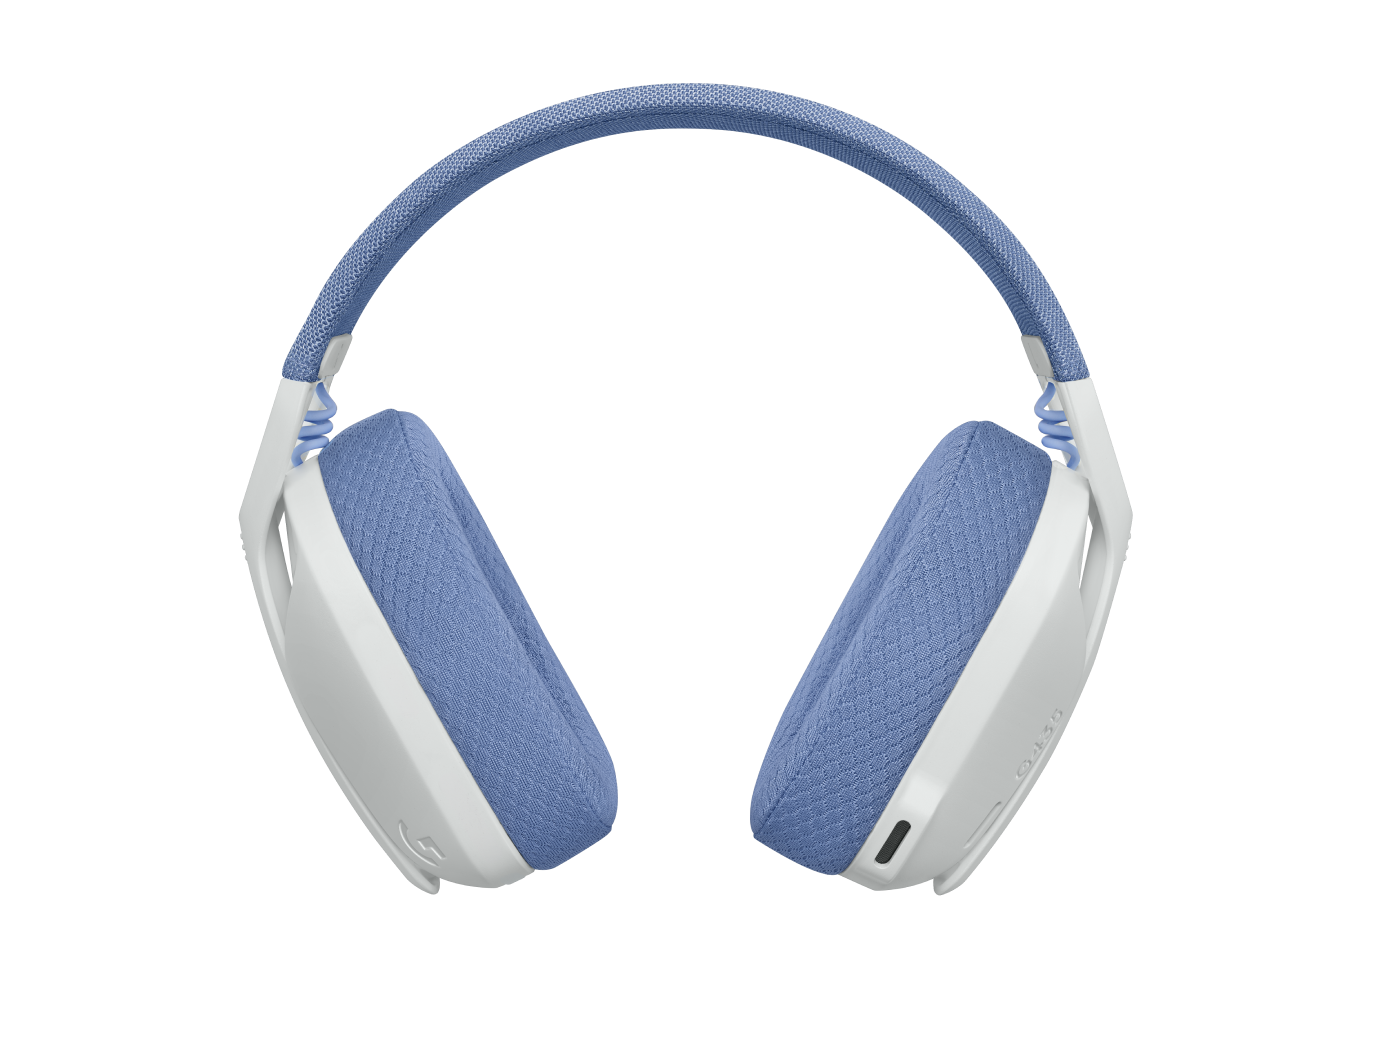 Logitech G435 Ultra-Light Wireless Bluetooth Gaming Headset